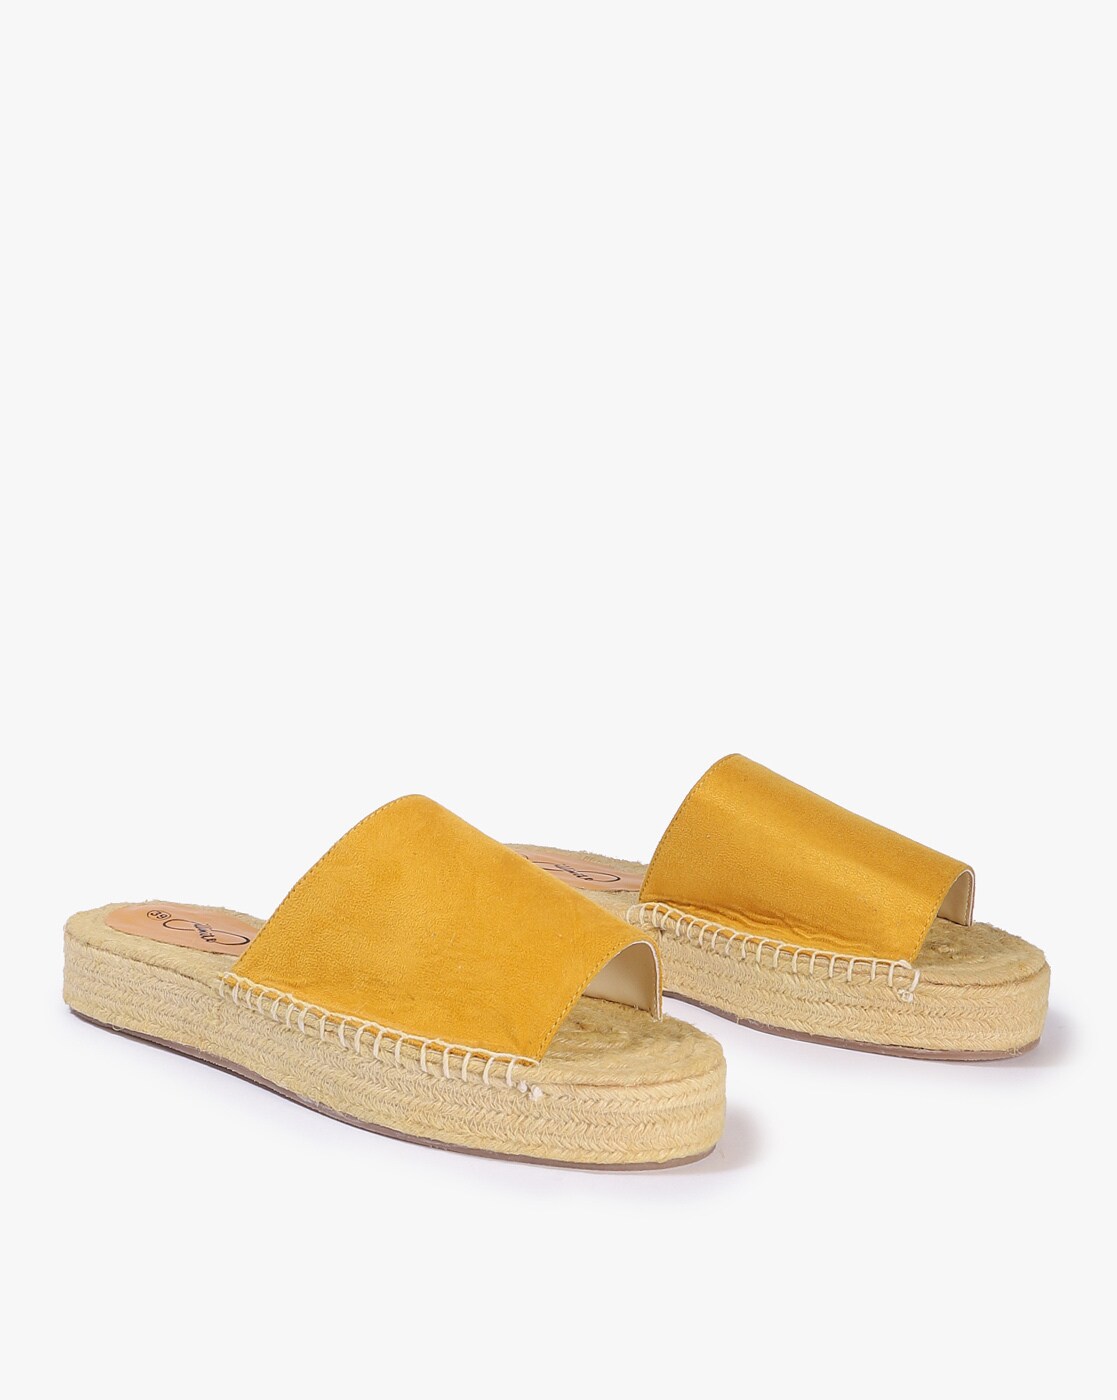 mustard platform sandals